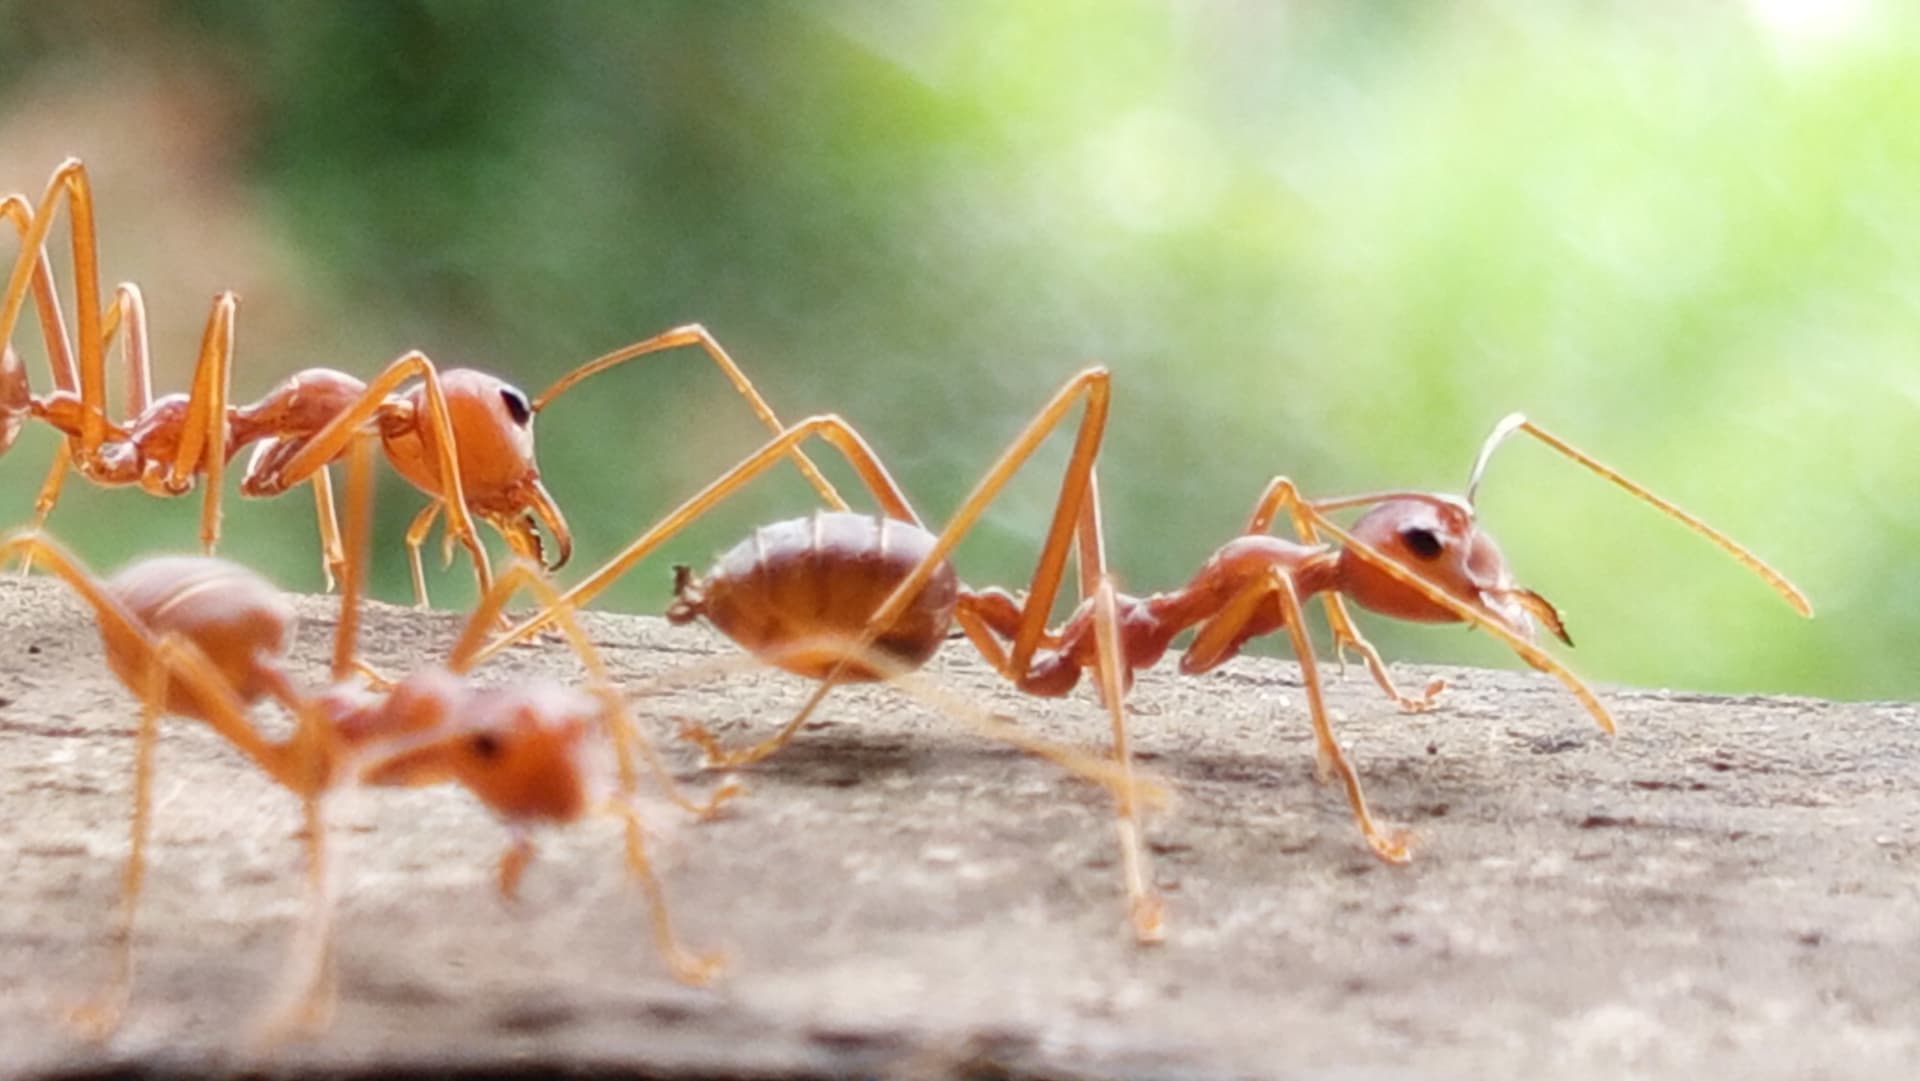 Červení ohniví mravenci Solenopsis invicta pocházejí z Jižní Ameriky, ale byli zavlečeni do dalších částí světa, včetně Severní Ameriky, kde se stali invazivním druhem.